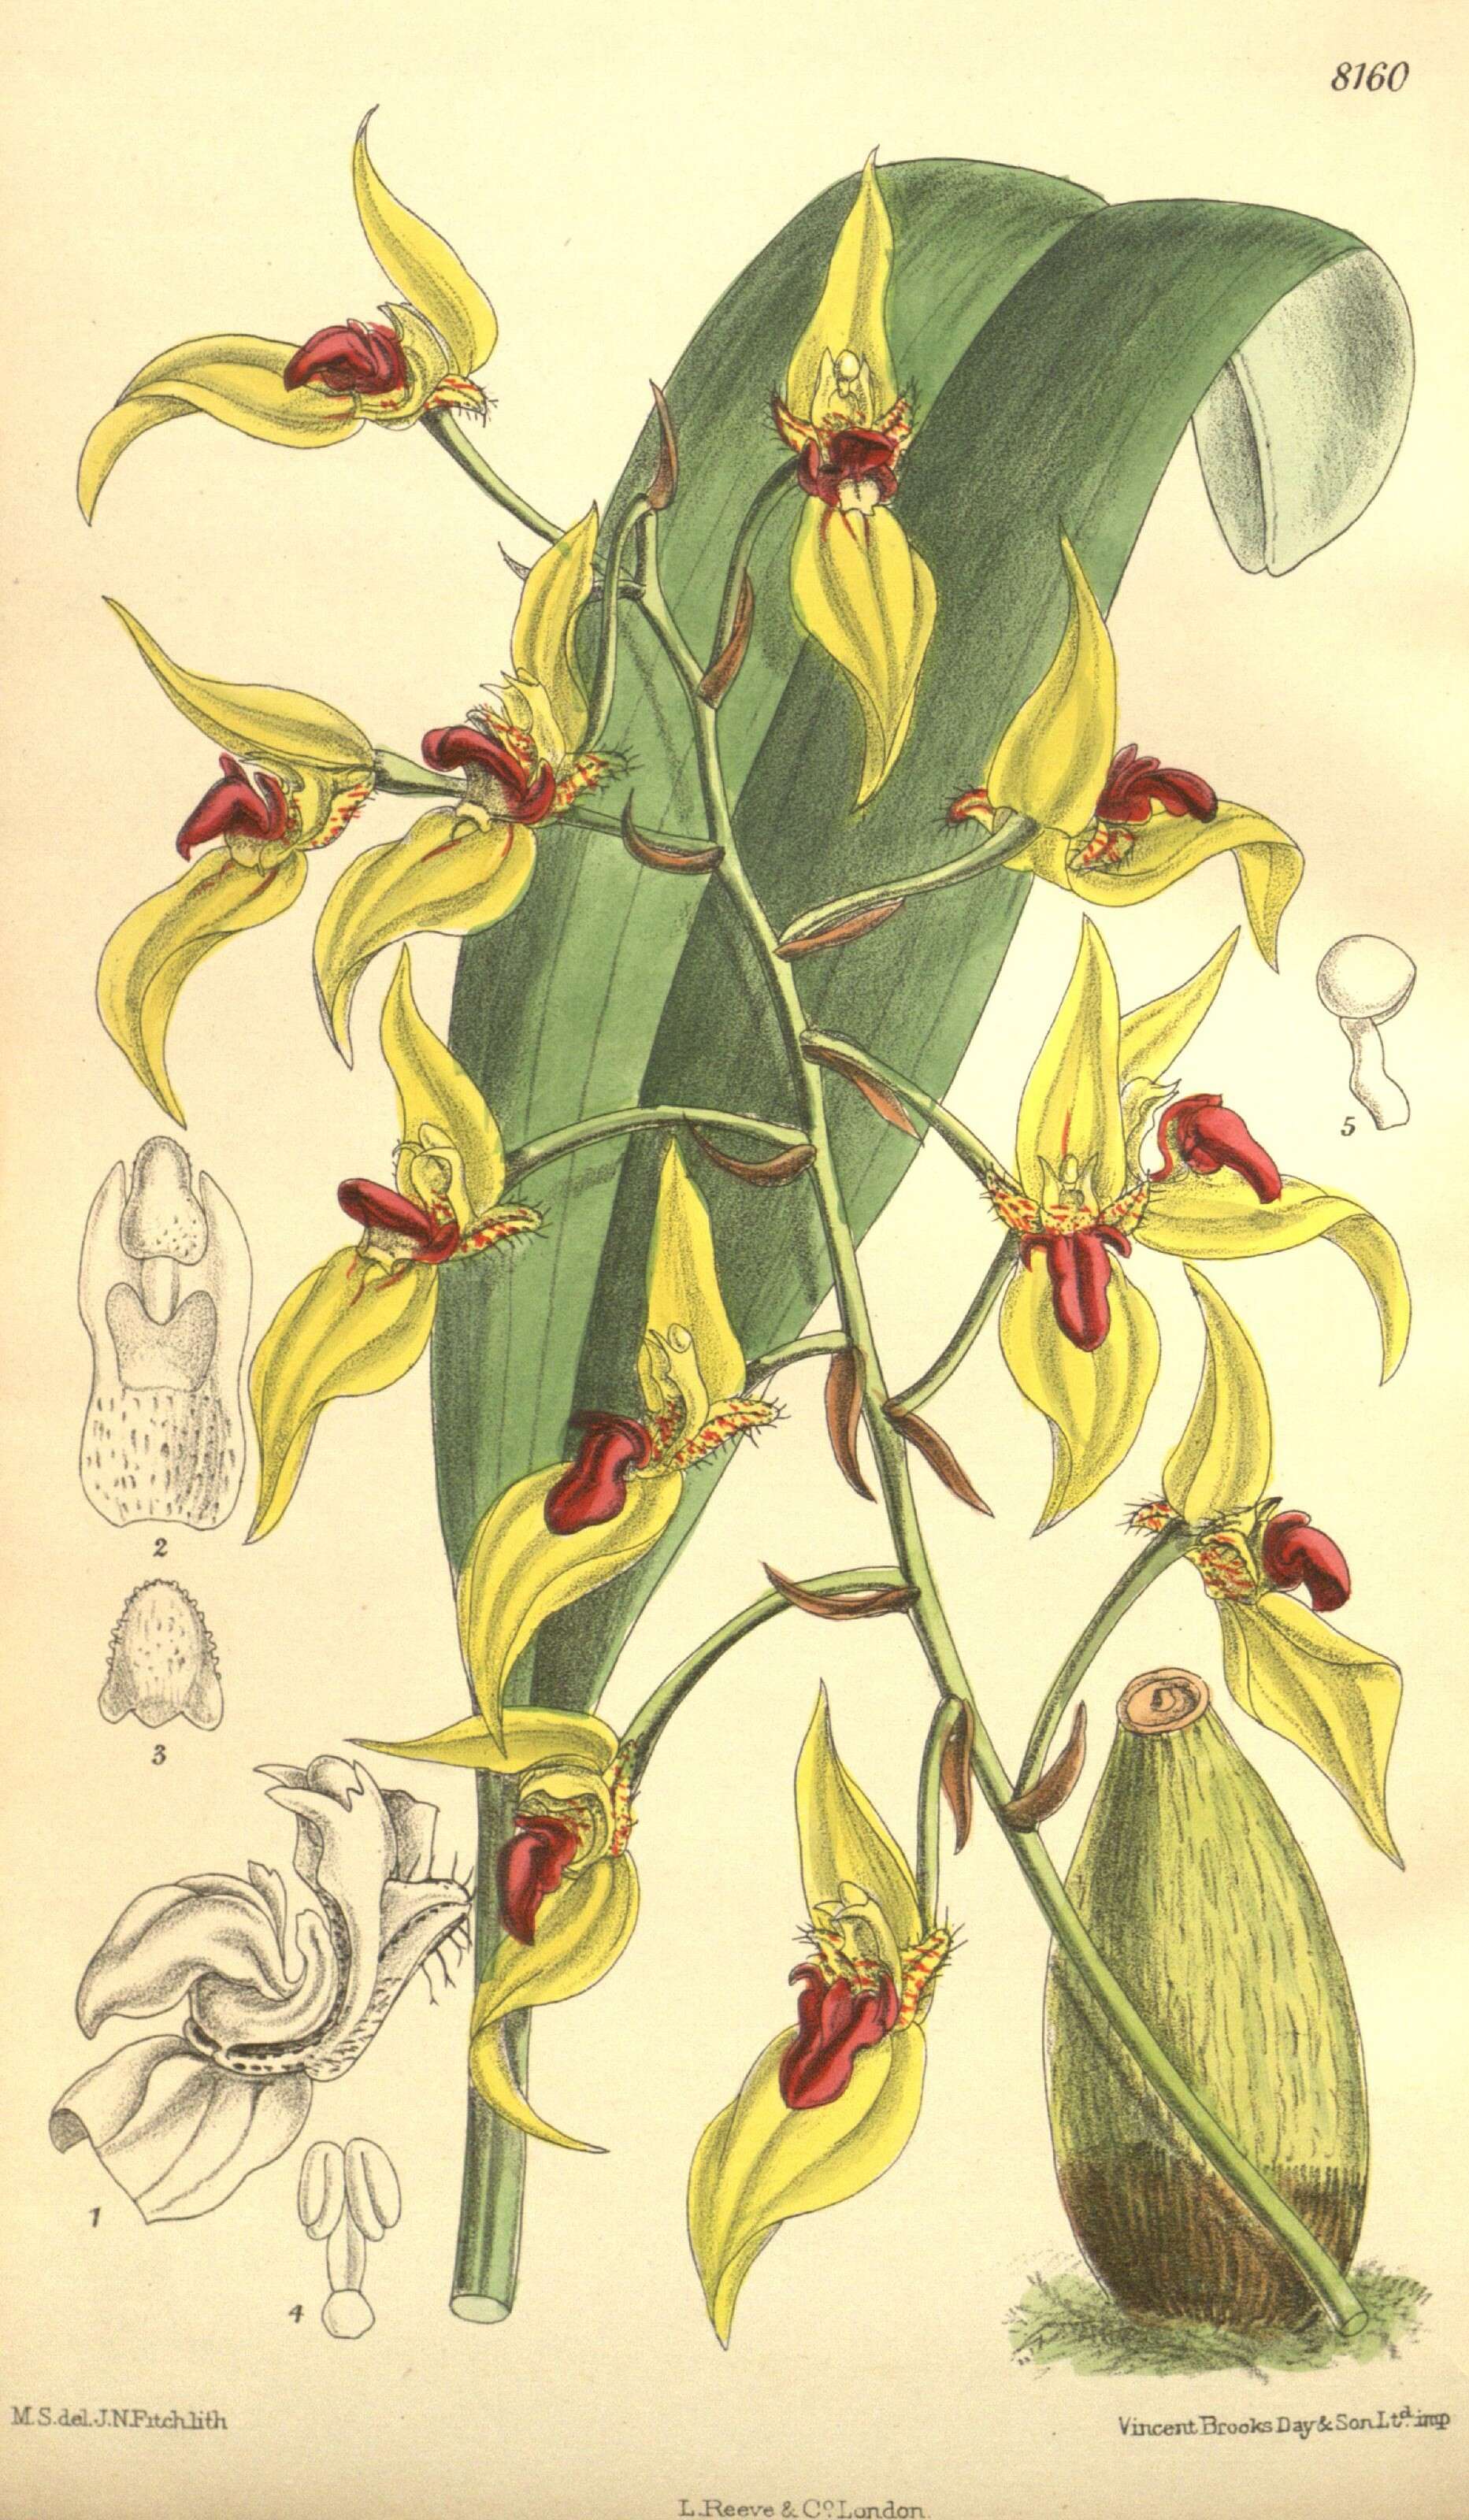 Plancia ëd Bulbophyllum dichromum Rolfe